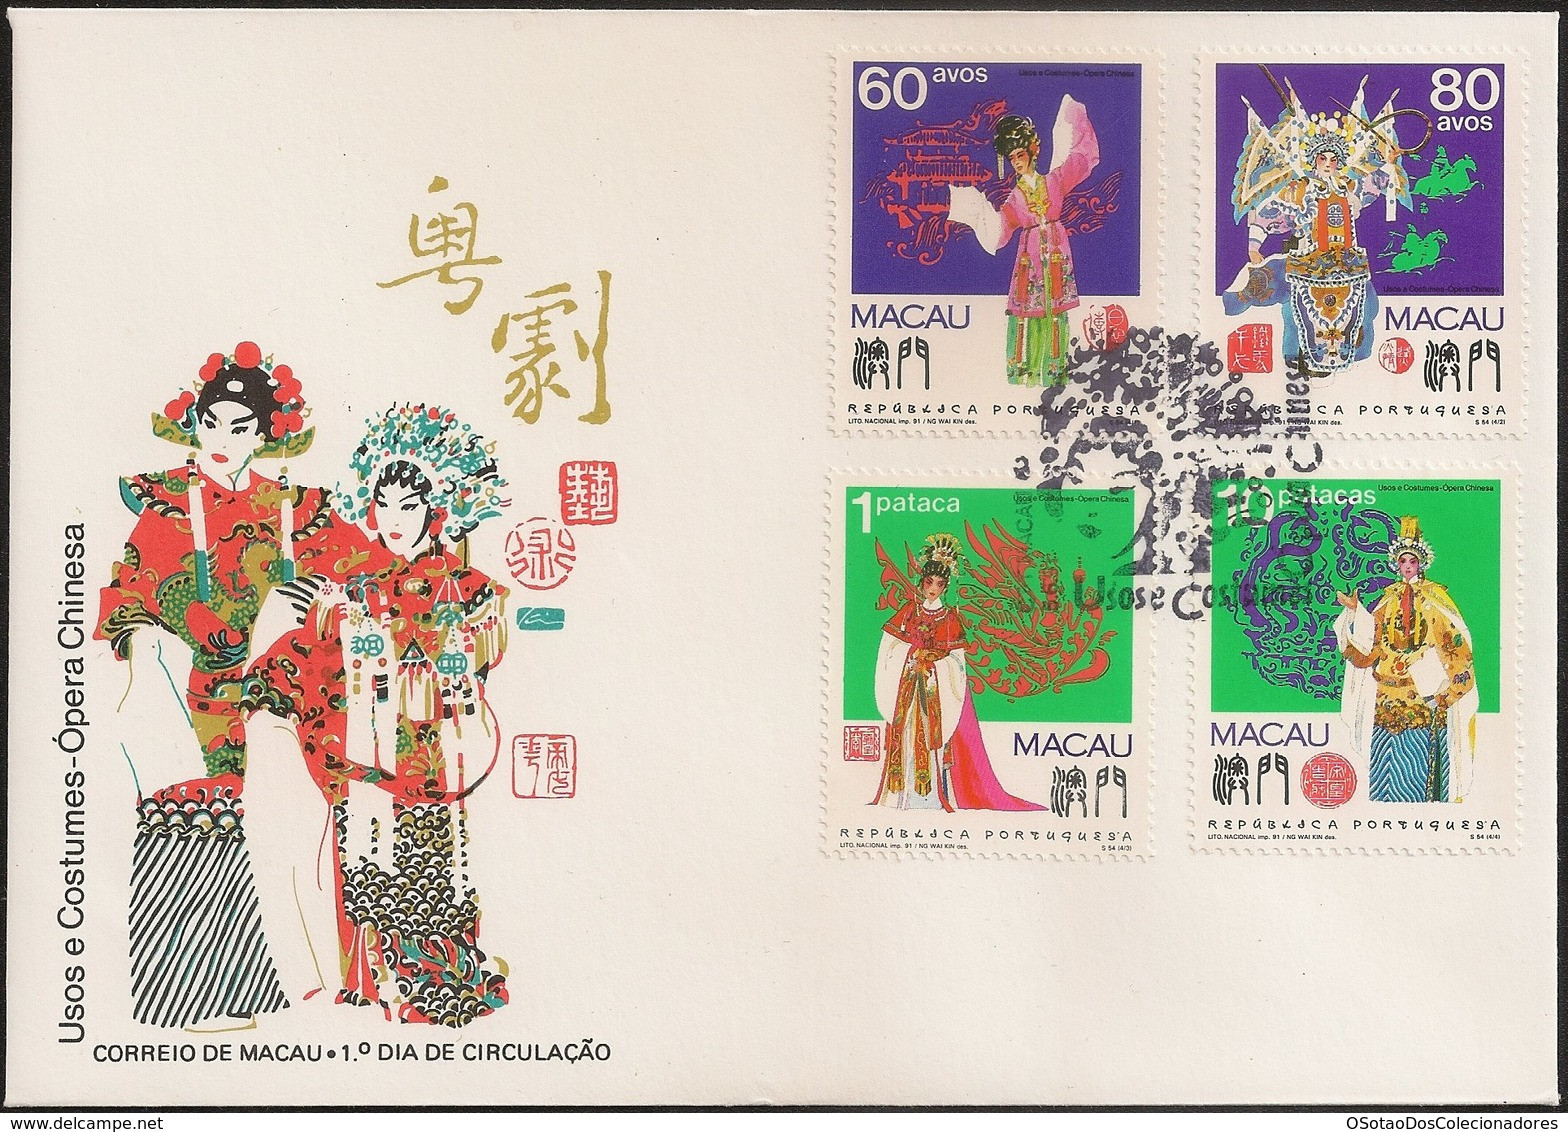 Macau Macao Chine FDC 1991 - Usos E Costumes - Ópera Chinesa - Chinese Opera - MNH/Neuf - FDC